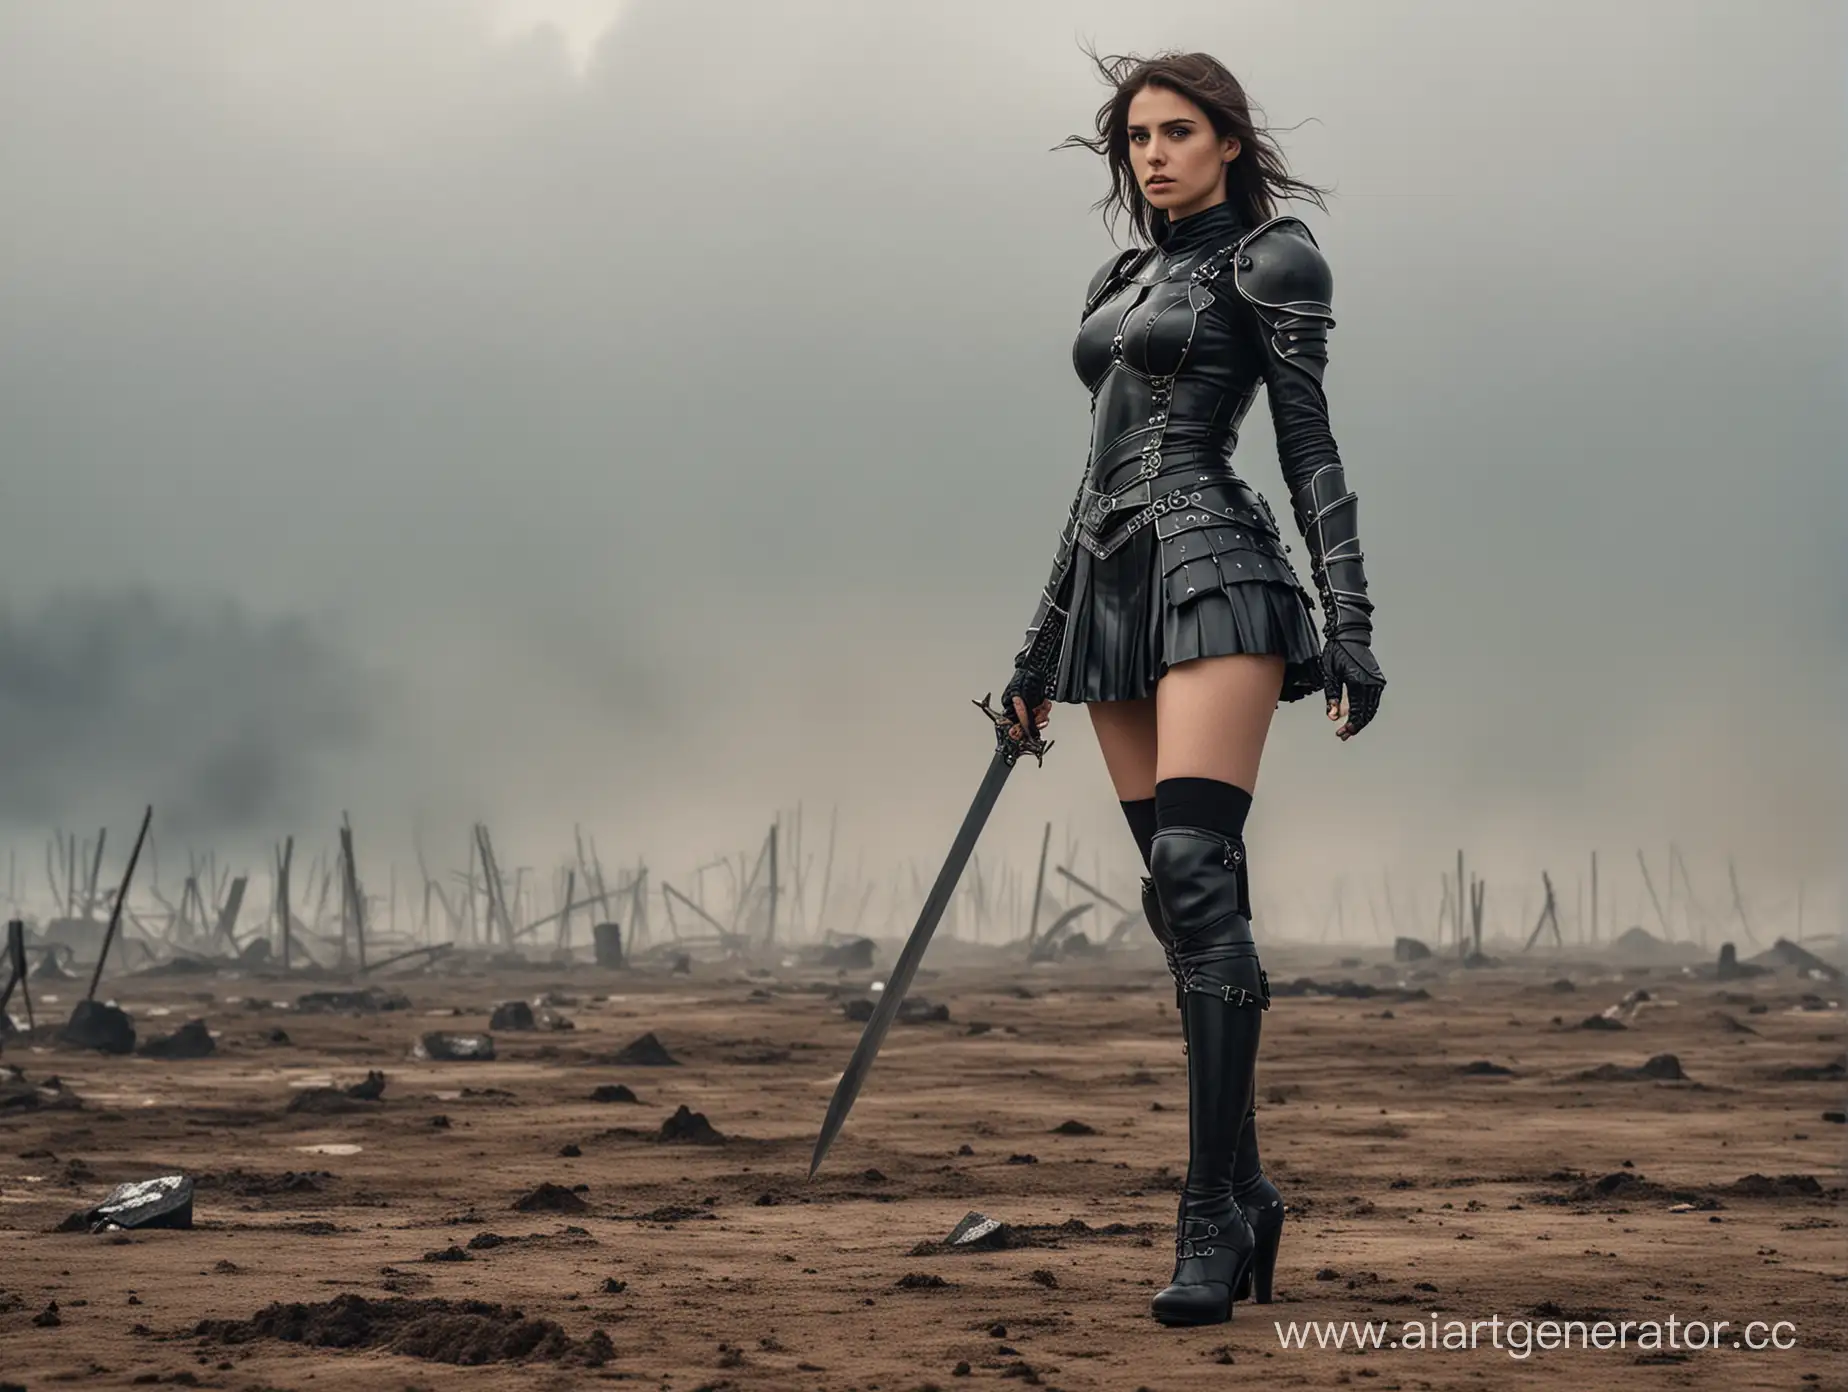 Девушка 25 лет Рыцарь в черных доспехах Хаоса 
в мини юбке , туфлях на шпильке и чулках. Стоит на поле боя.